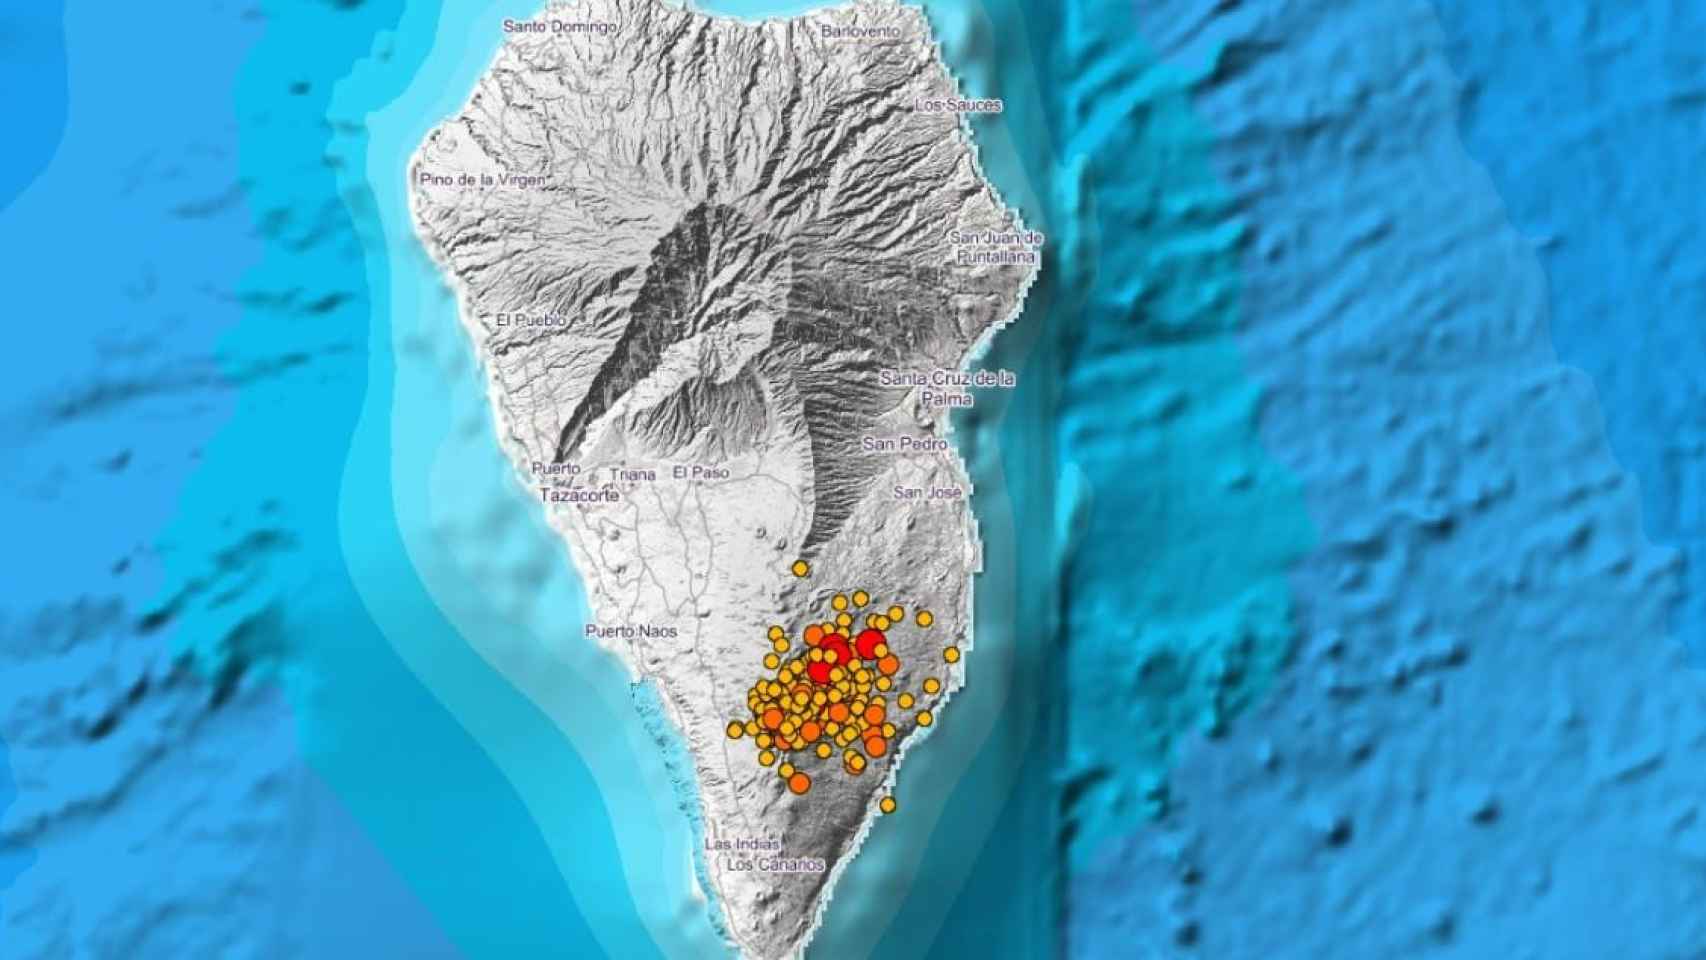 La Palma registra el terremoto de mayor magnitud /IGN